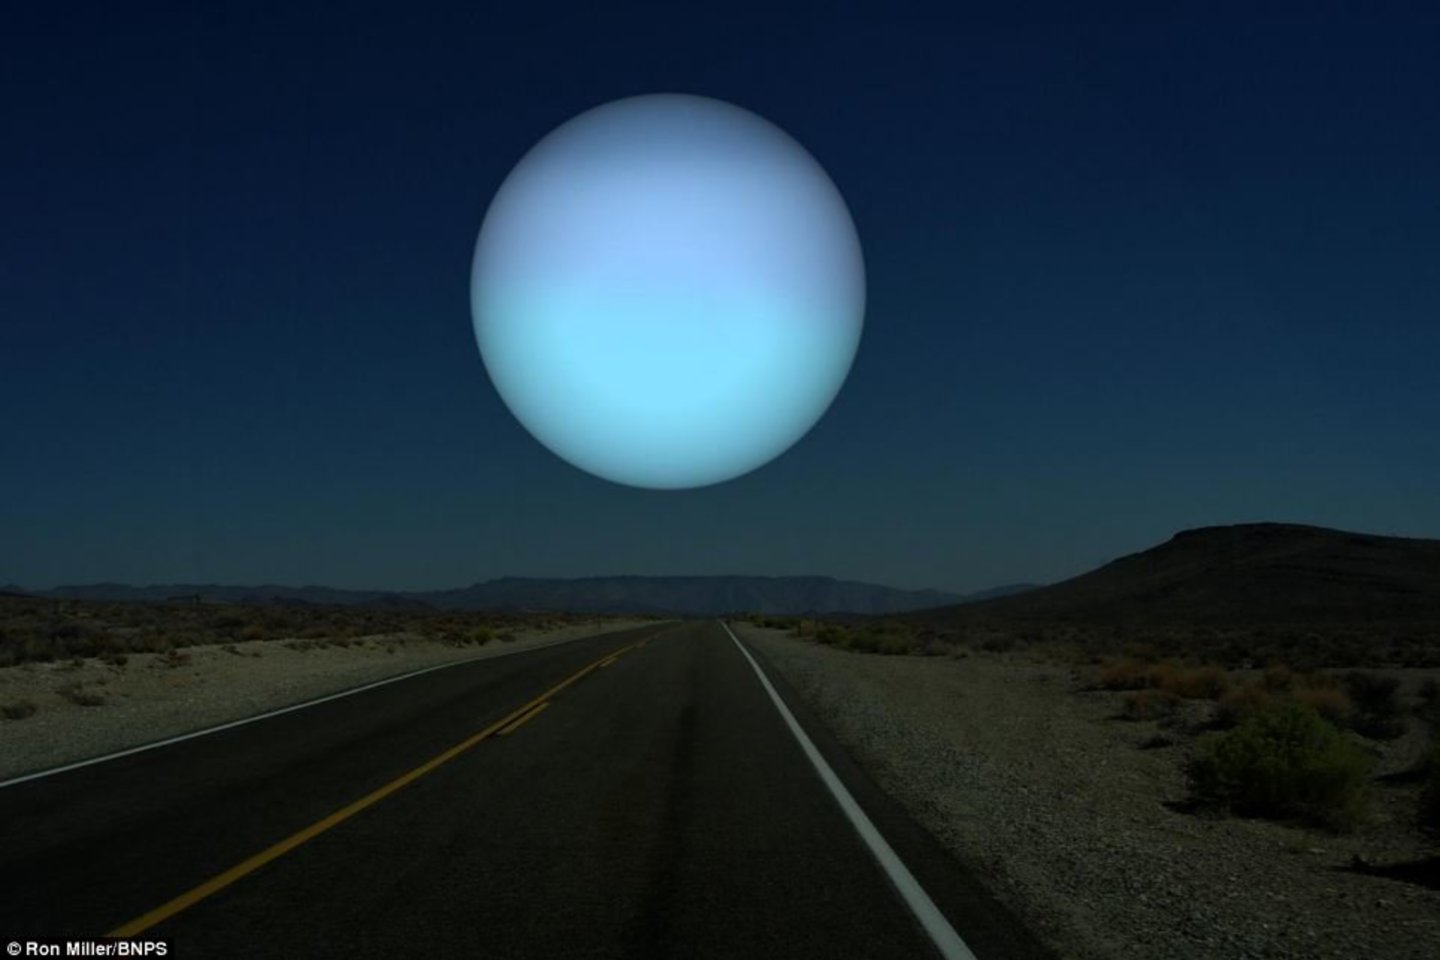 Uranas – pirmoji Saulės sistemos planeta, atrasta teleskopu. Atstumas iki Žemės – 2 723 950 000 km, skersmuo ties pusiauju – 51 118 km. <br>R.Miller nuotr. 